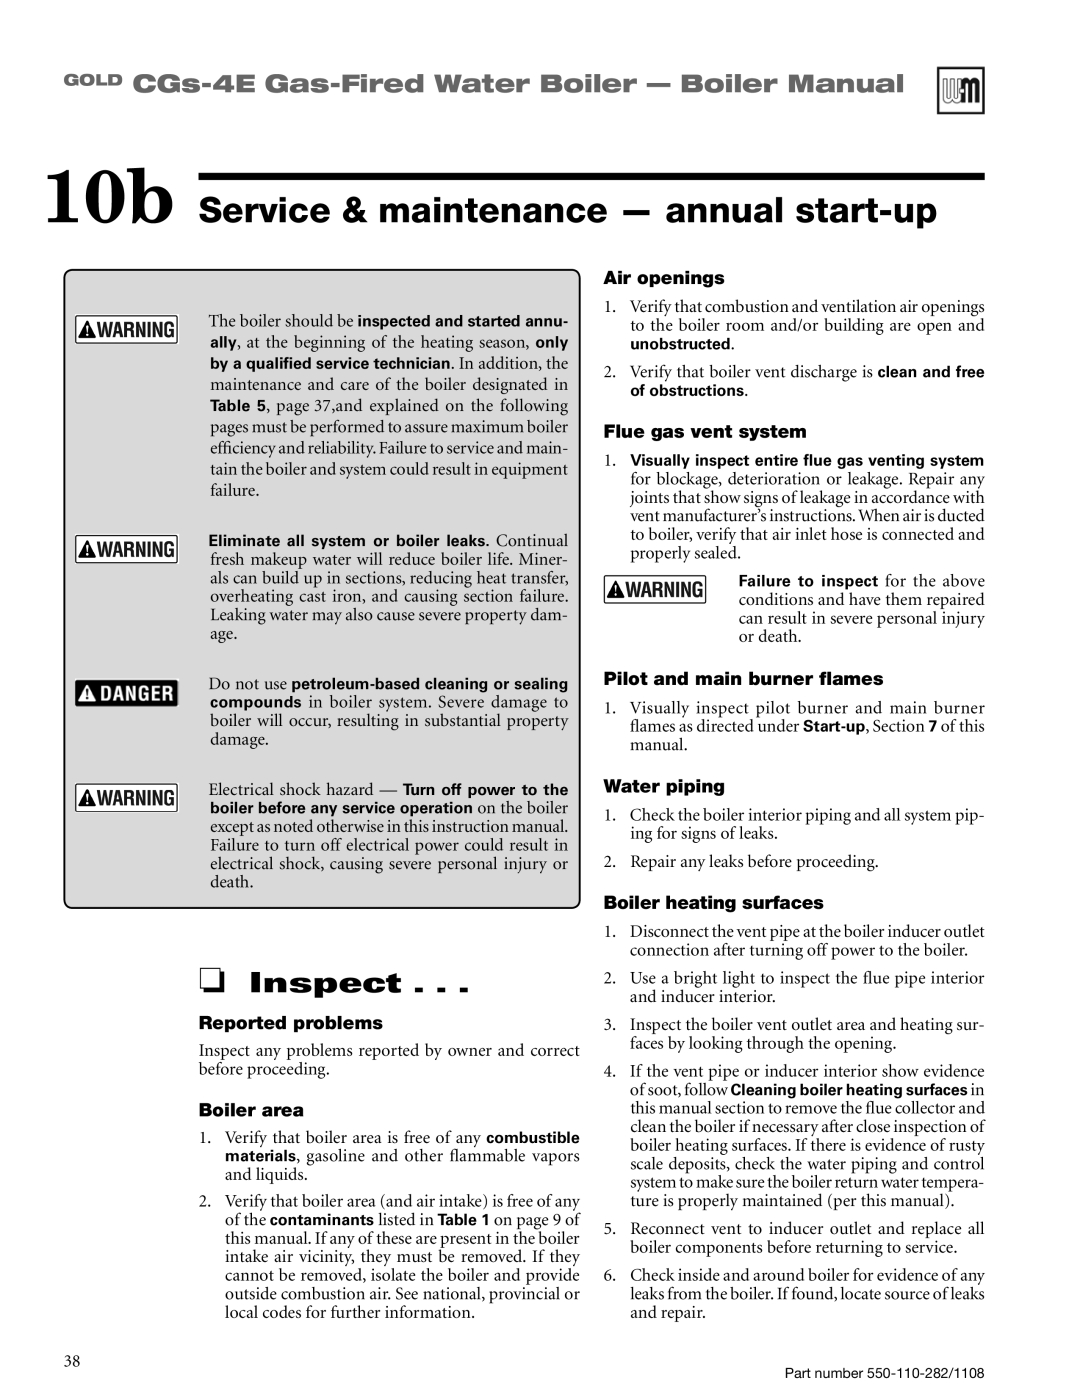 Weil-McLain CGS-4E 10b Service & maintenance - annual start-up, Inspect, GOLD CGs-4E Gas-FiredWater Boiler - Boiler Manual 